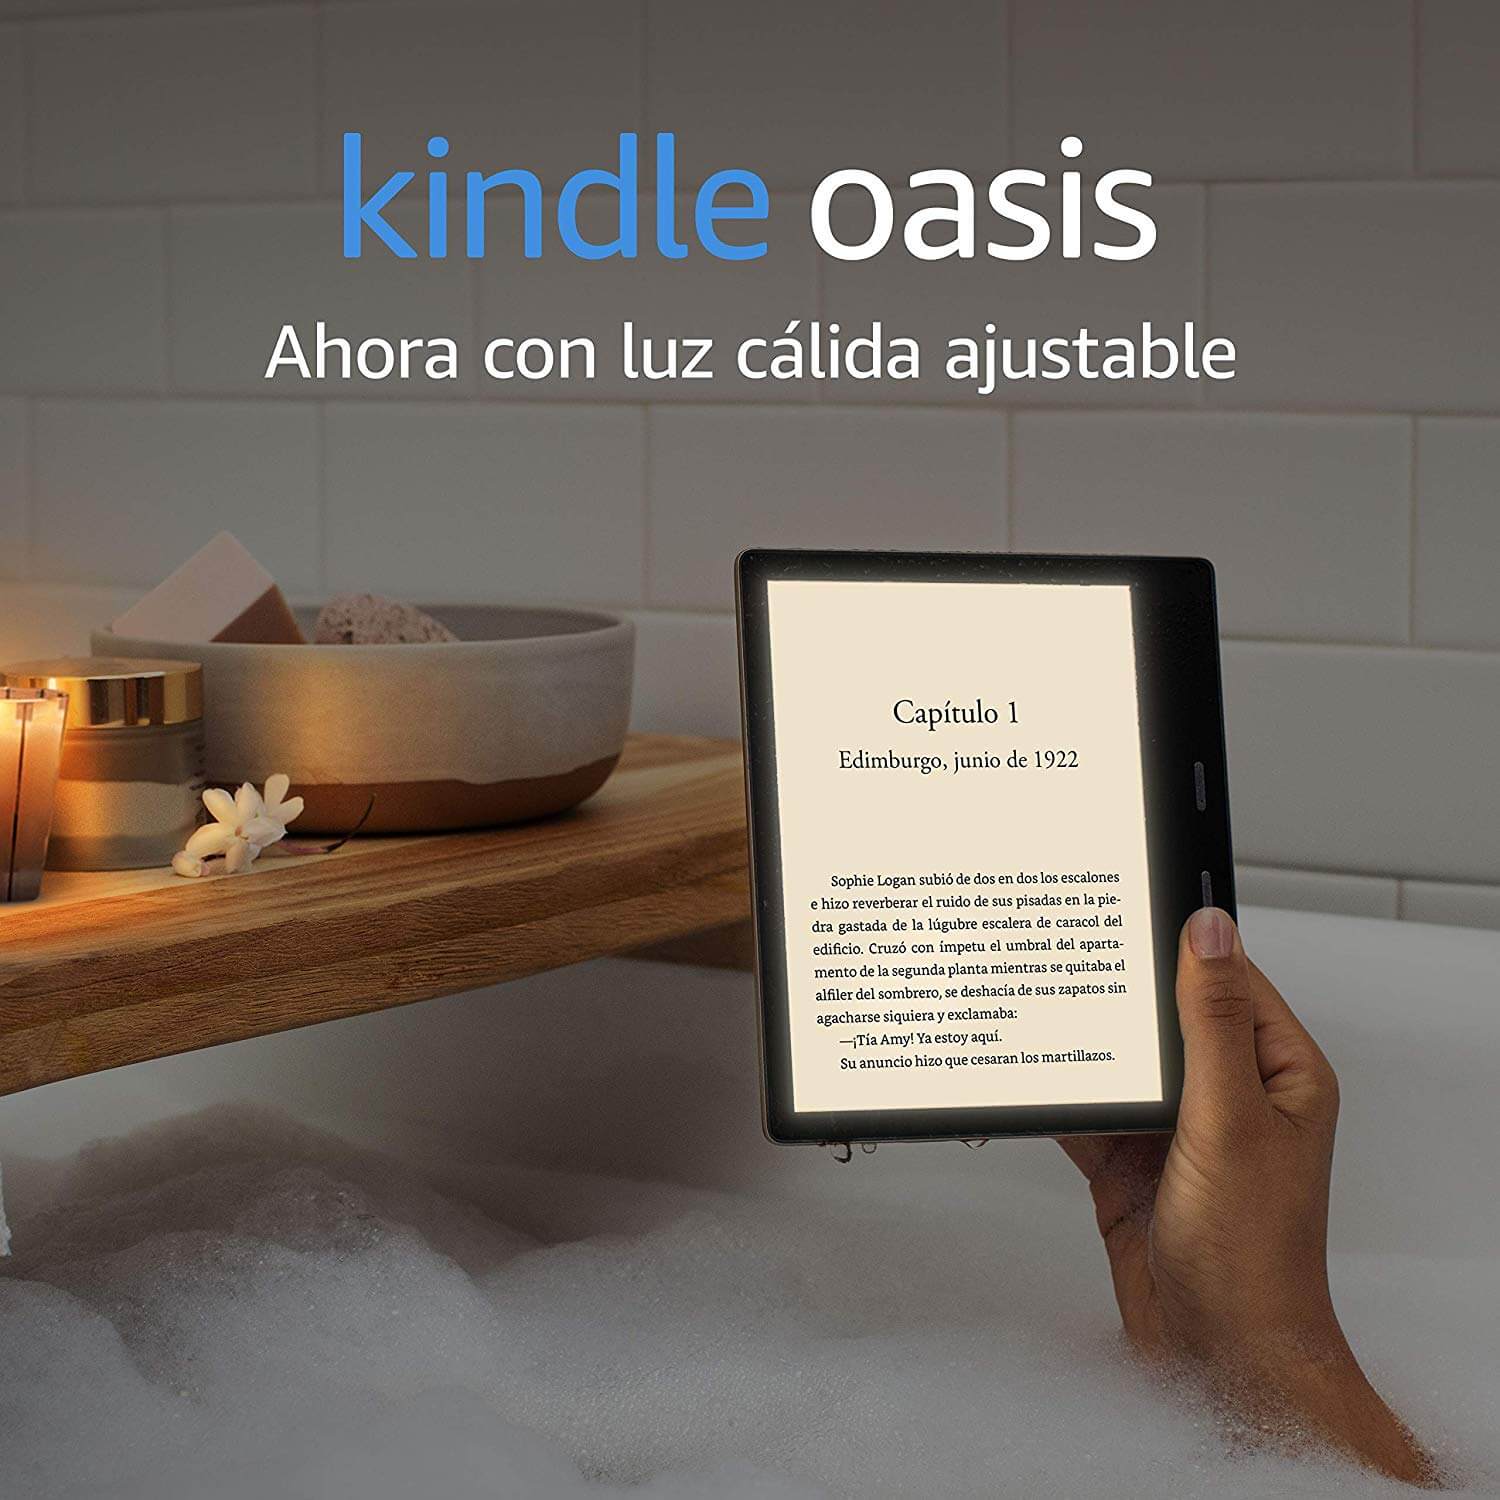 Kindle Oasis es lo nuevo de Amazon para leer